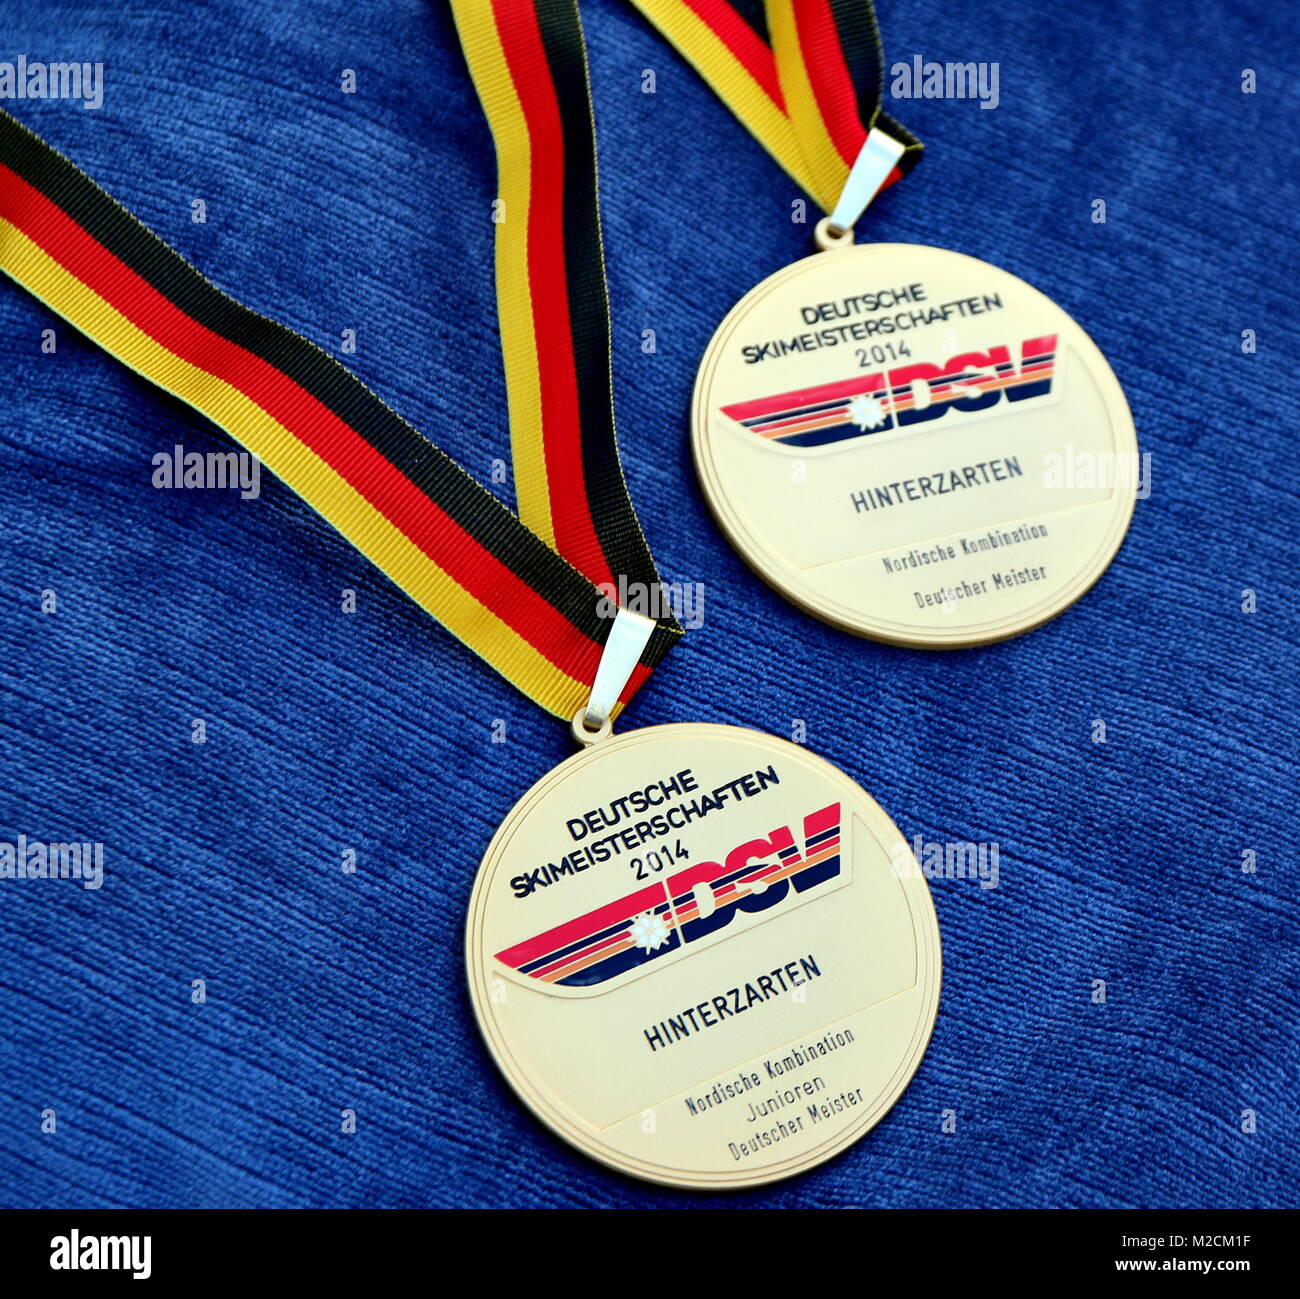 Oro, Silber, bronce bei der DM Nordische Kombination Hinterzarten bei der DM Nordische Kombination Hinterzarten Foto de stock